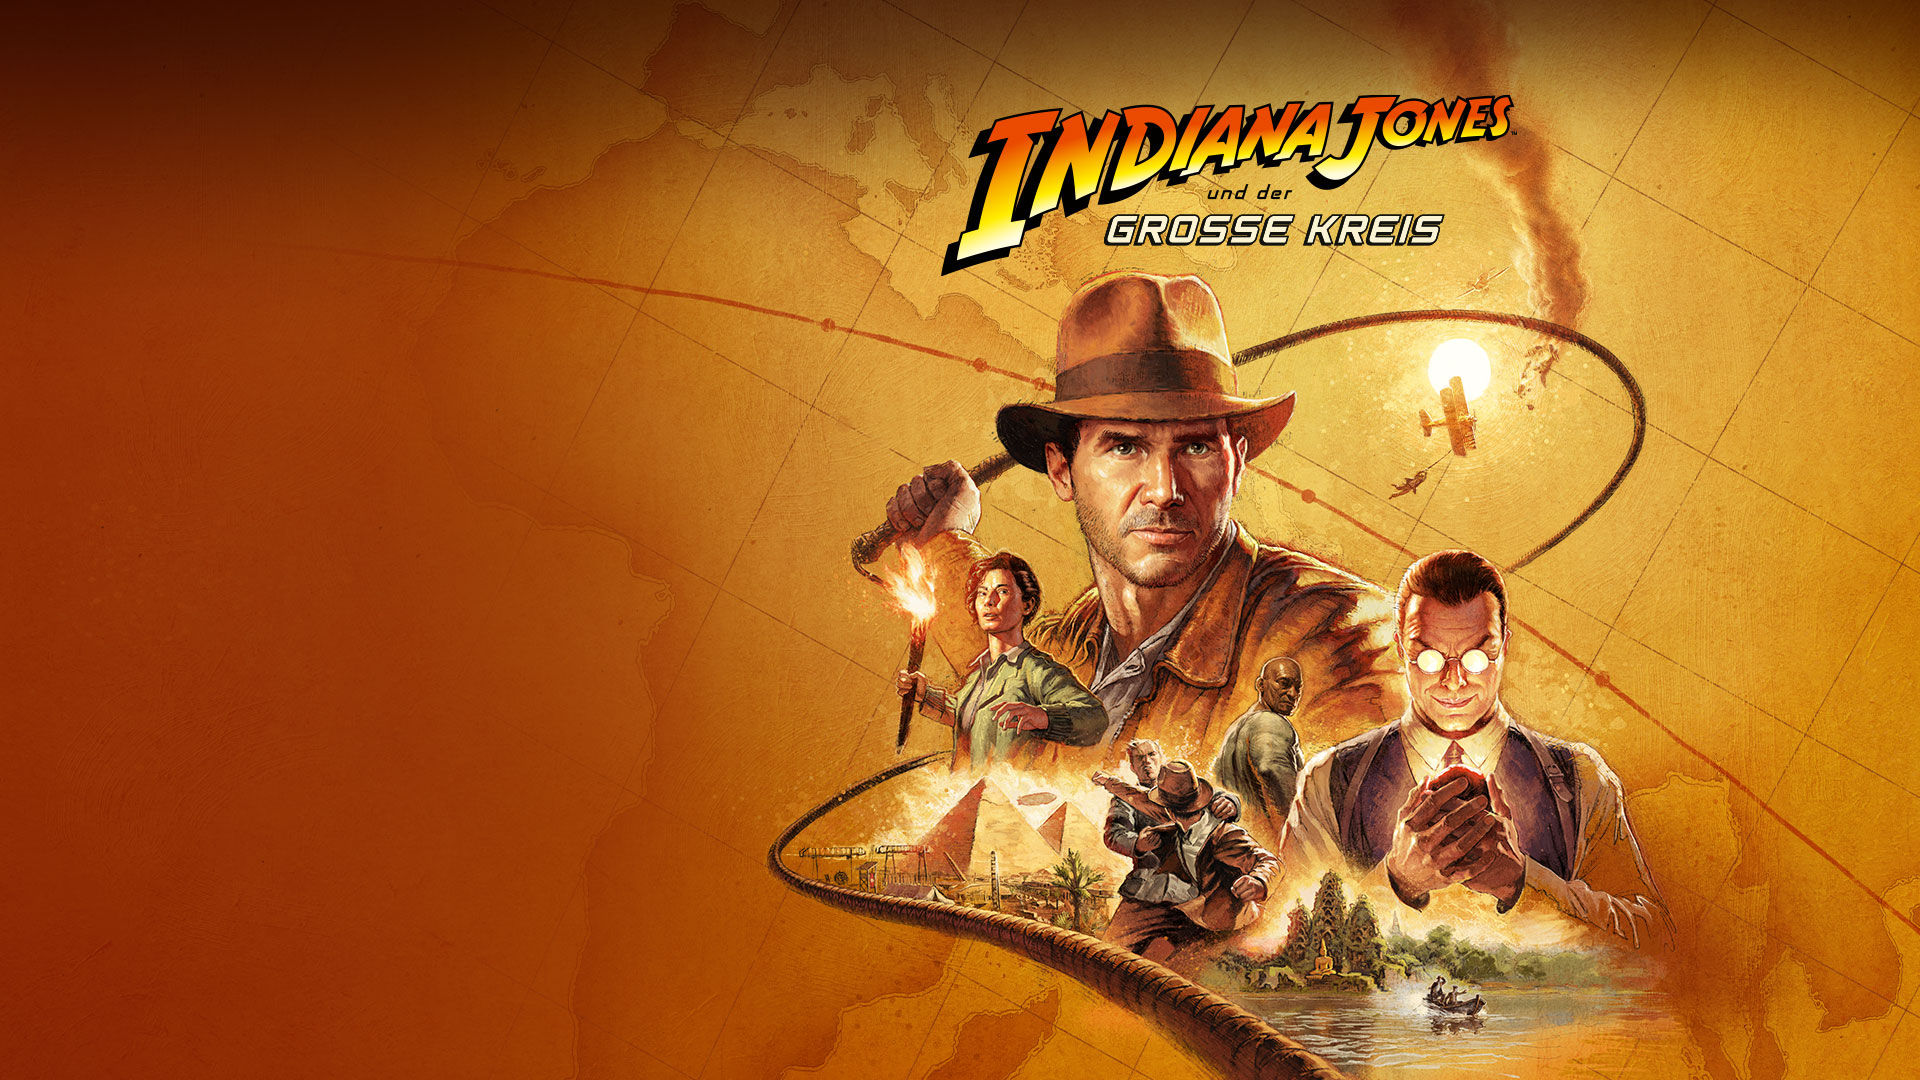 Indiana Jones und der Grosse Kreis, Collage von Dr. Jones, seinen Freund*innen und seinen Feind*innen, die eine sepiafarbene Weltkarte überlagert.